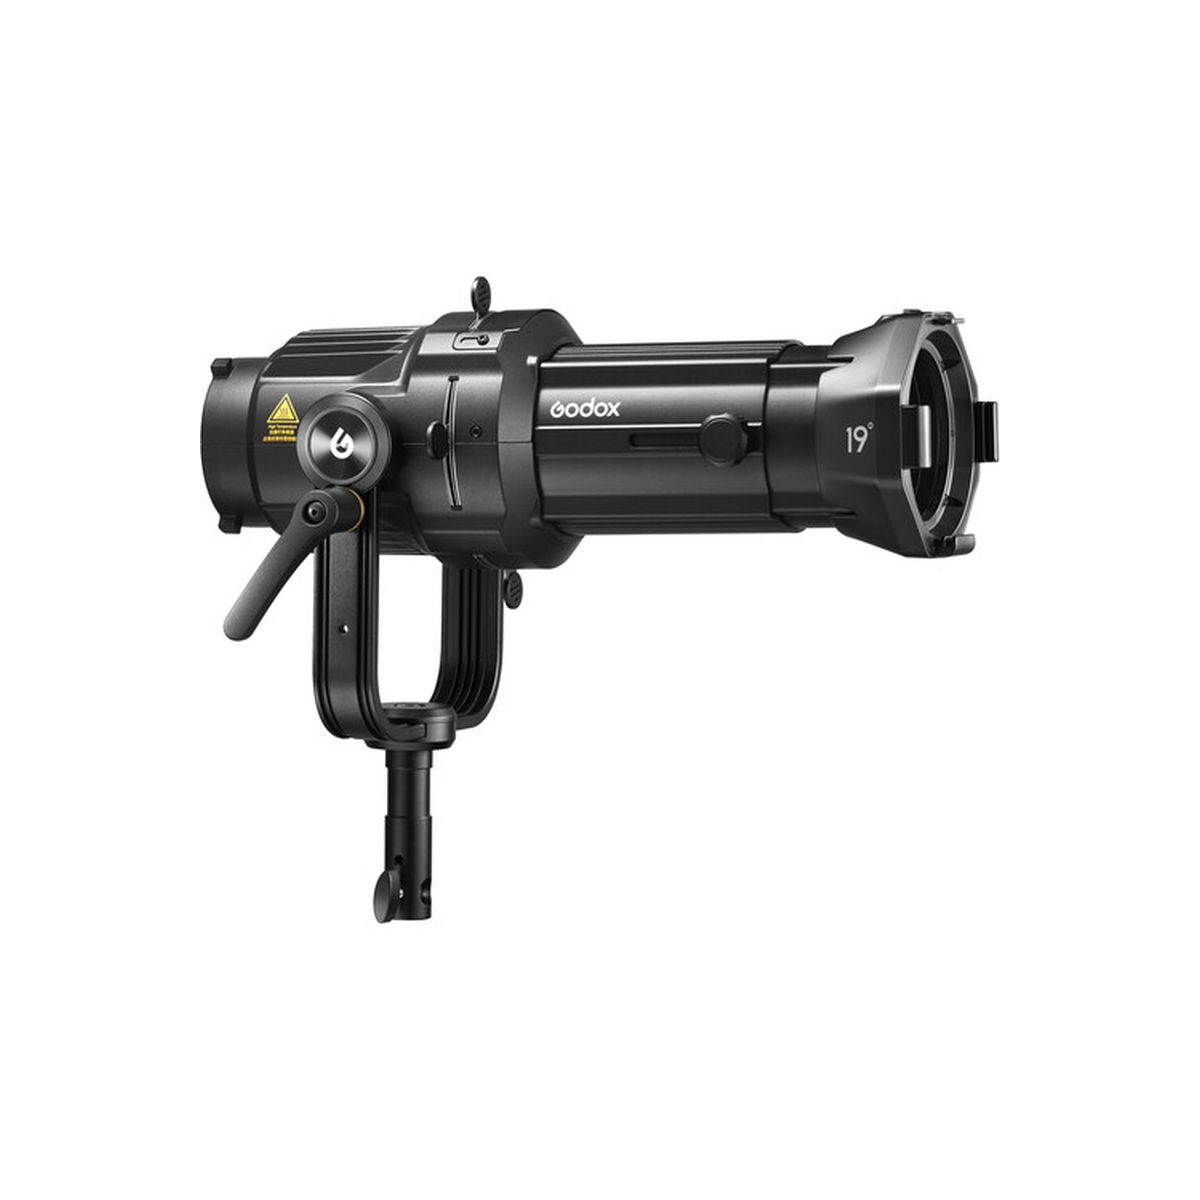 Godox VSA-19K Spotlight Kit